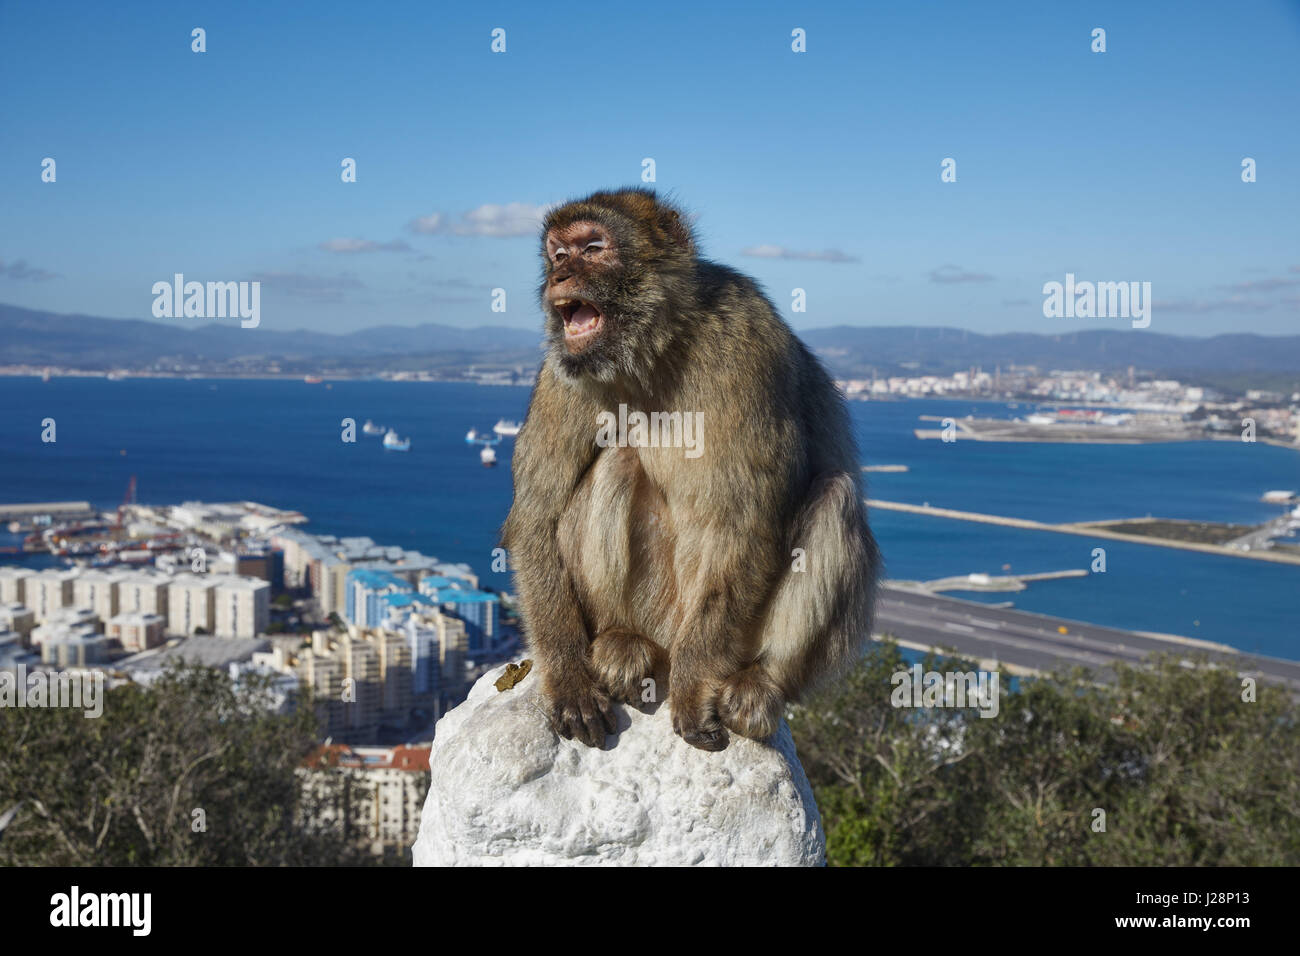 Gibraltar, monkey rock, un singe berbère se trouve de façon menaçante, avec sa bouche grande ouverte sur une balustrade, derrière elle la gorge la mer de Gibraltar avec un aéroport Banque D'Images